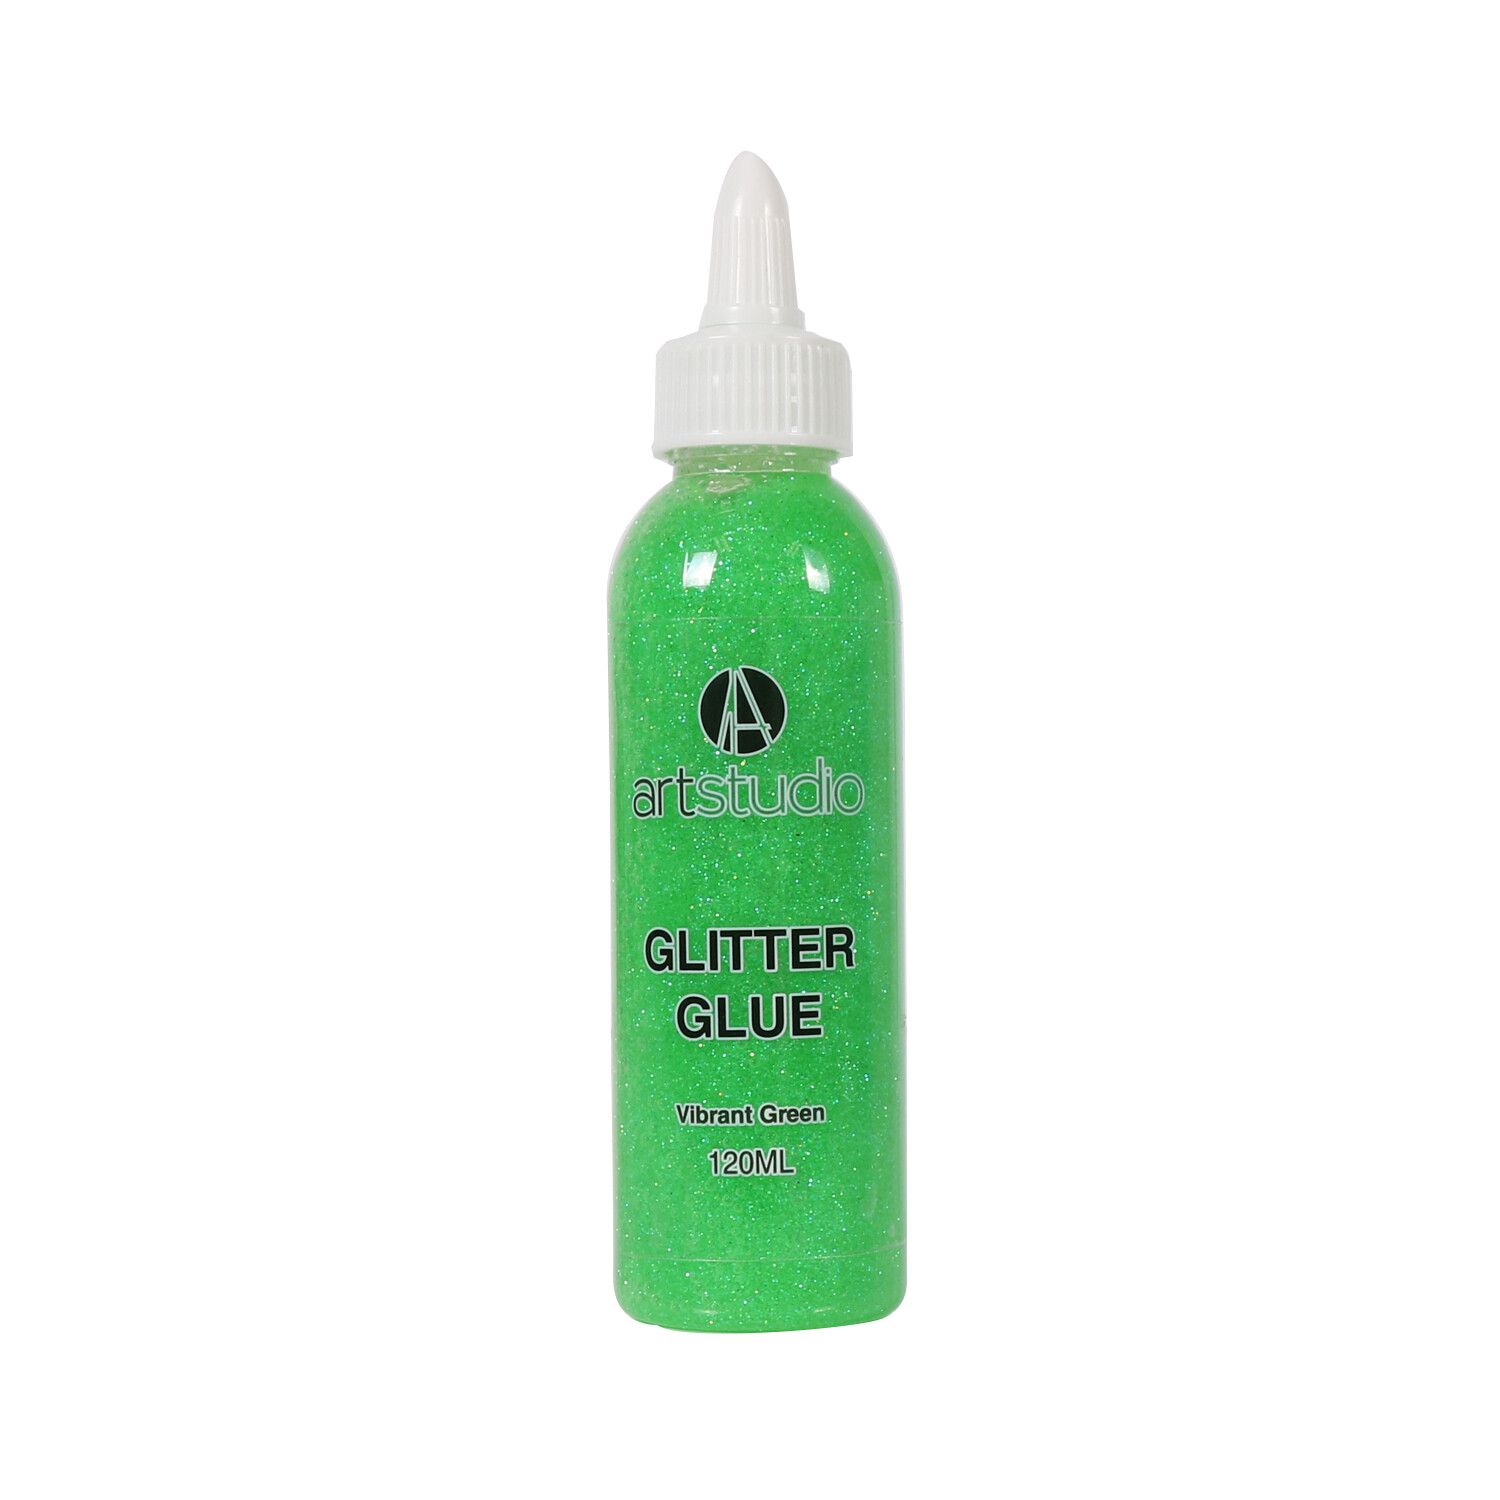 Art Studio Glitter Glue - Vibrant Green Image